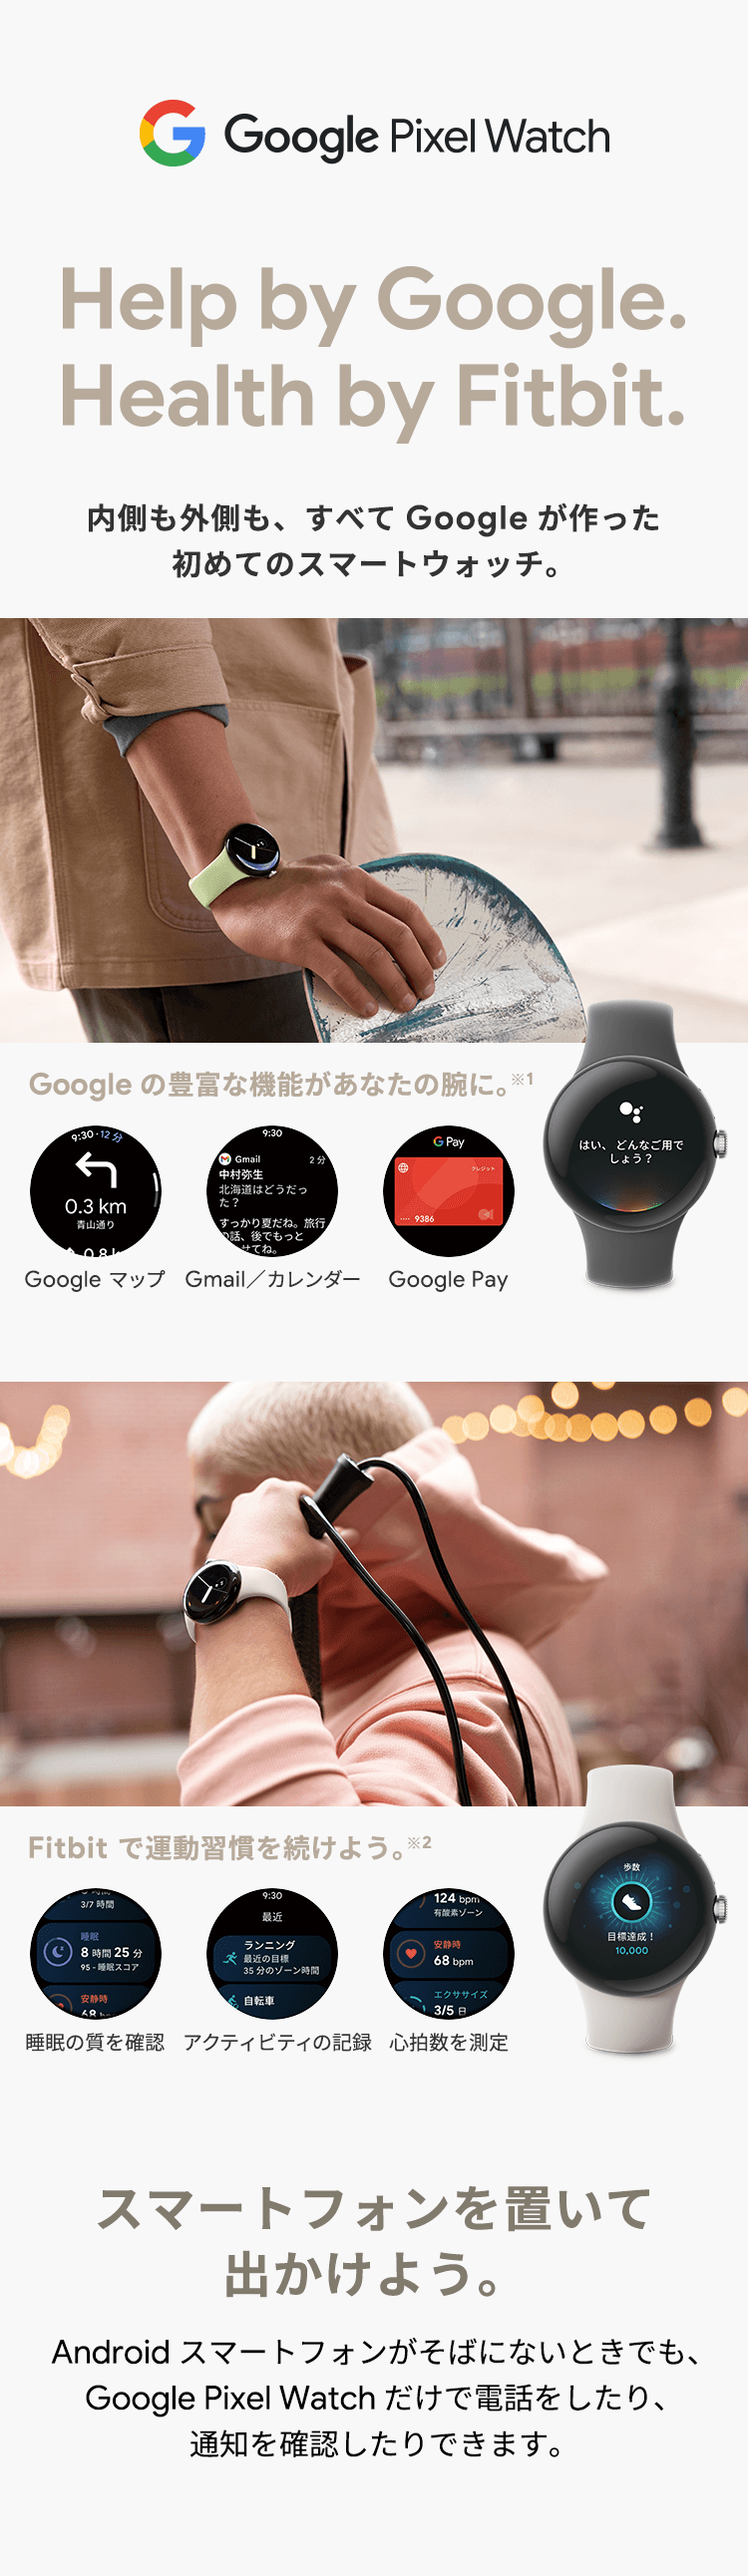 Google Pixel Watch Help by Google.Health by Fitbit. 内側も外側も、すべてGoogleが作った初めてのスマートウォッチ。Google の豊富な機能があなたの腕に。※1 Google マップ Gmail／カレンダー Google Pay Fitbit で運動習慣を続けよう。※2 睡眠の質を確認 アクティビティの記録 心拍数を測定 スマートフォンを置いて出かけよう。Android スマートフォンがそばにないときでも、Google Pixel Watch だけで電話したり、通知を確認したり出来ます。